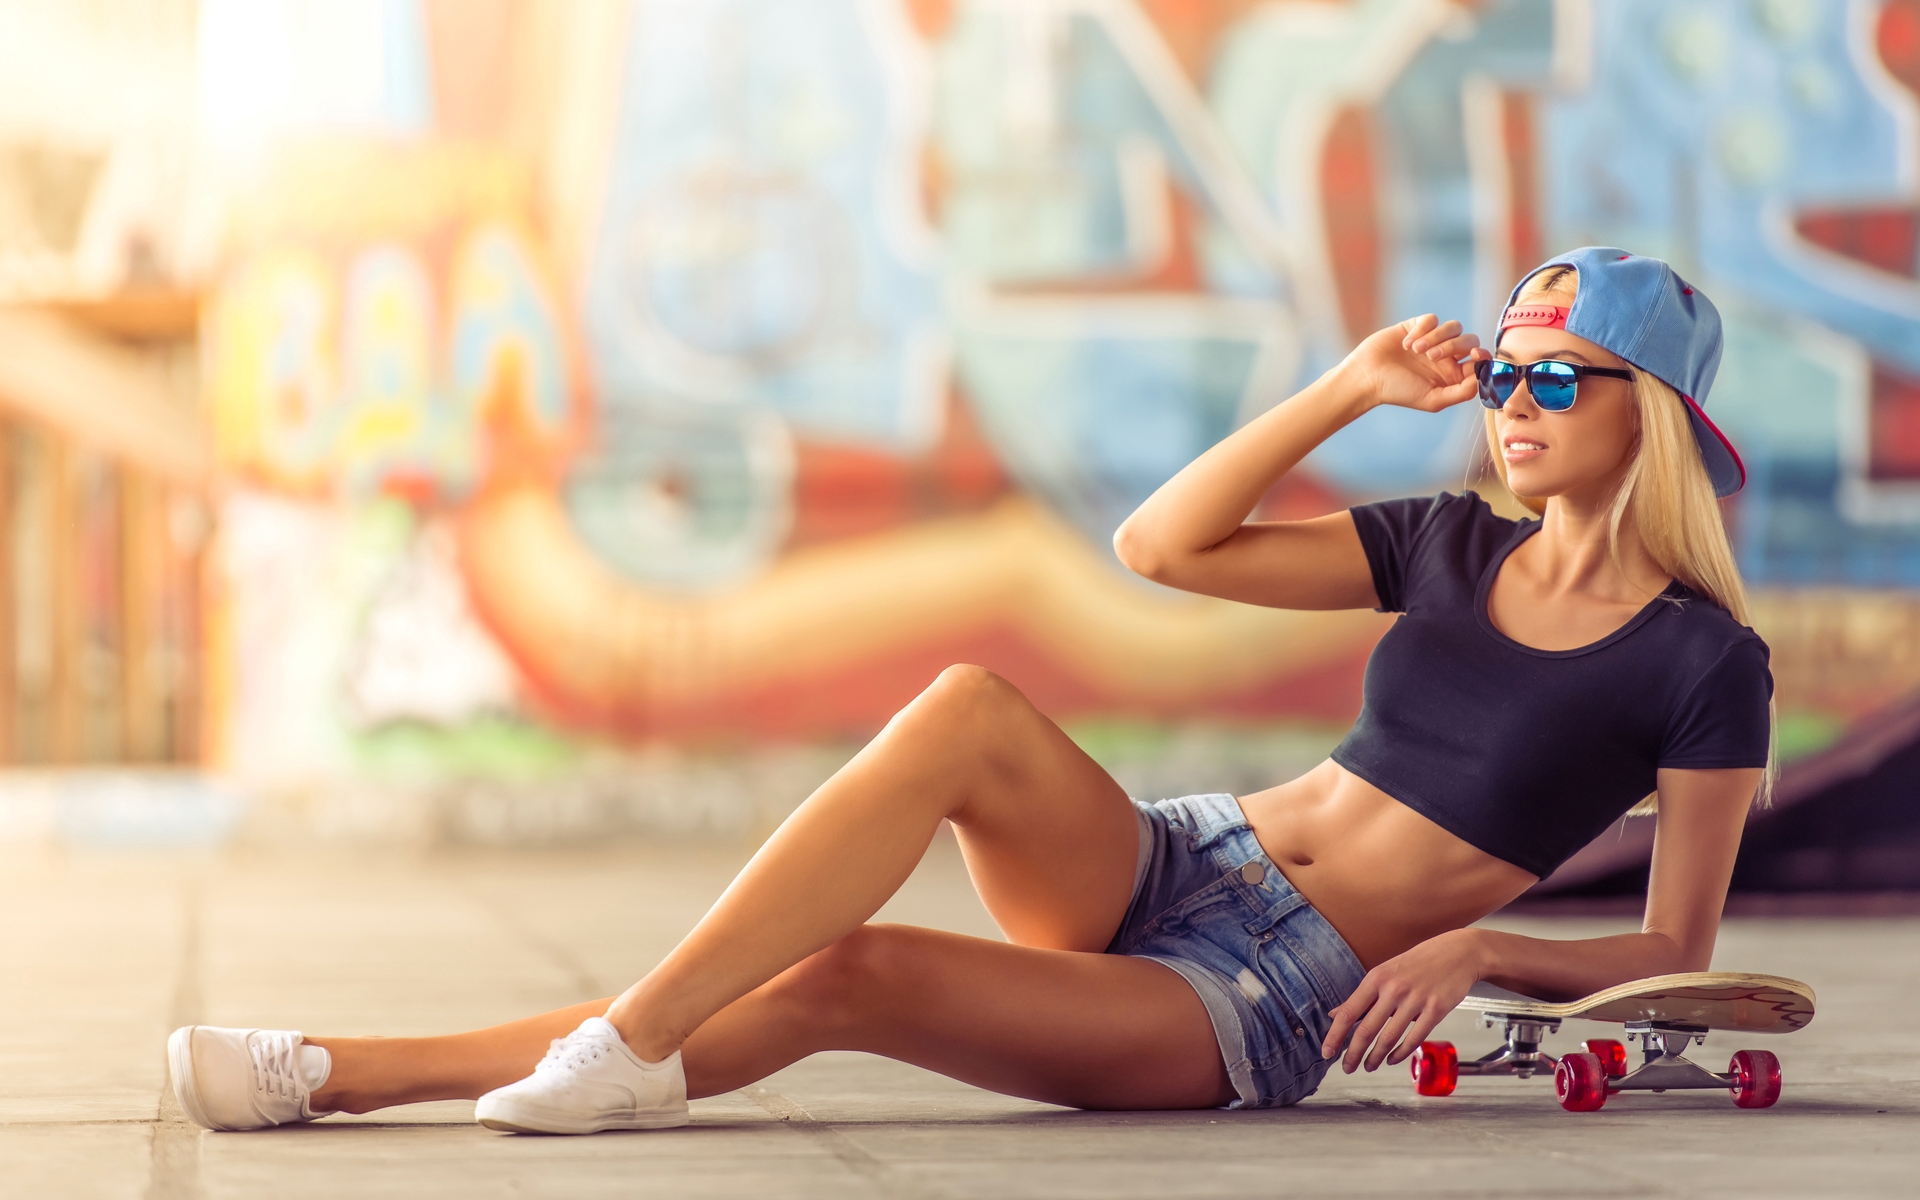 Image: Girl, blonde, cap, glasses, lies, skateboard, graffiti